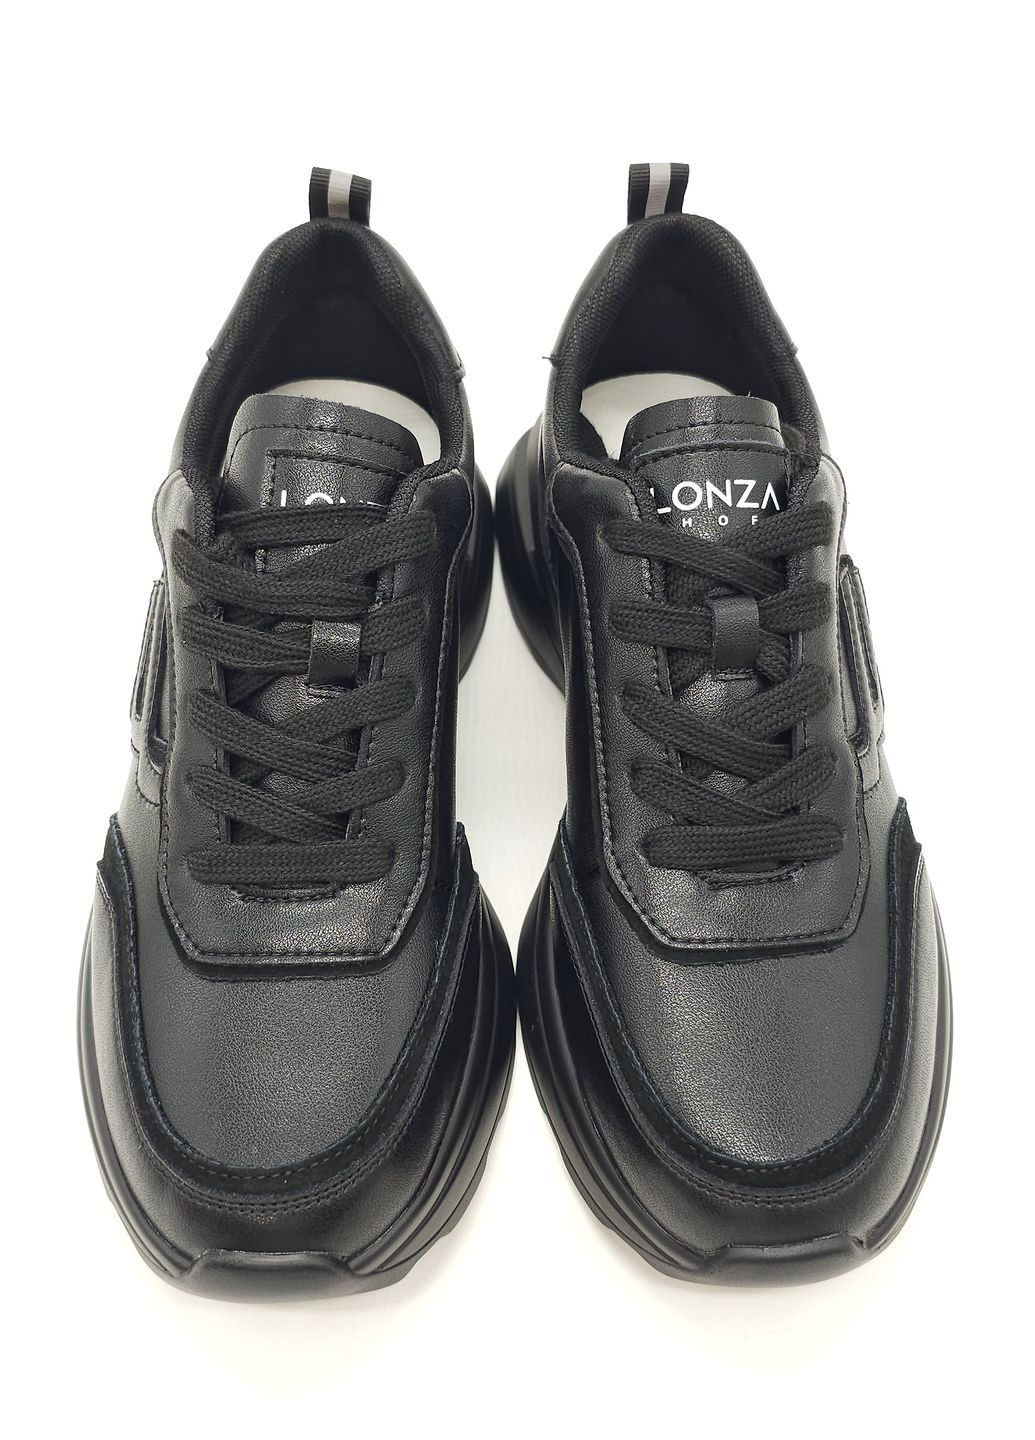 Чорні всесезонні жіночі кросівки чорні шкіряні l-10-33 24,5 см (р) Lonza